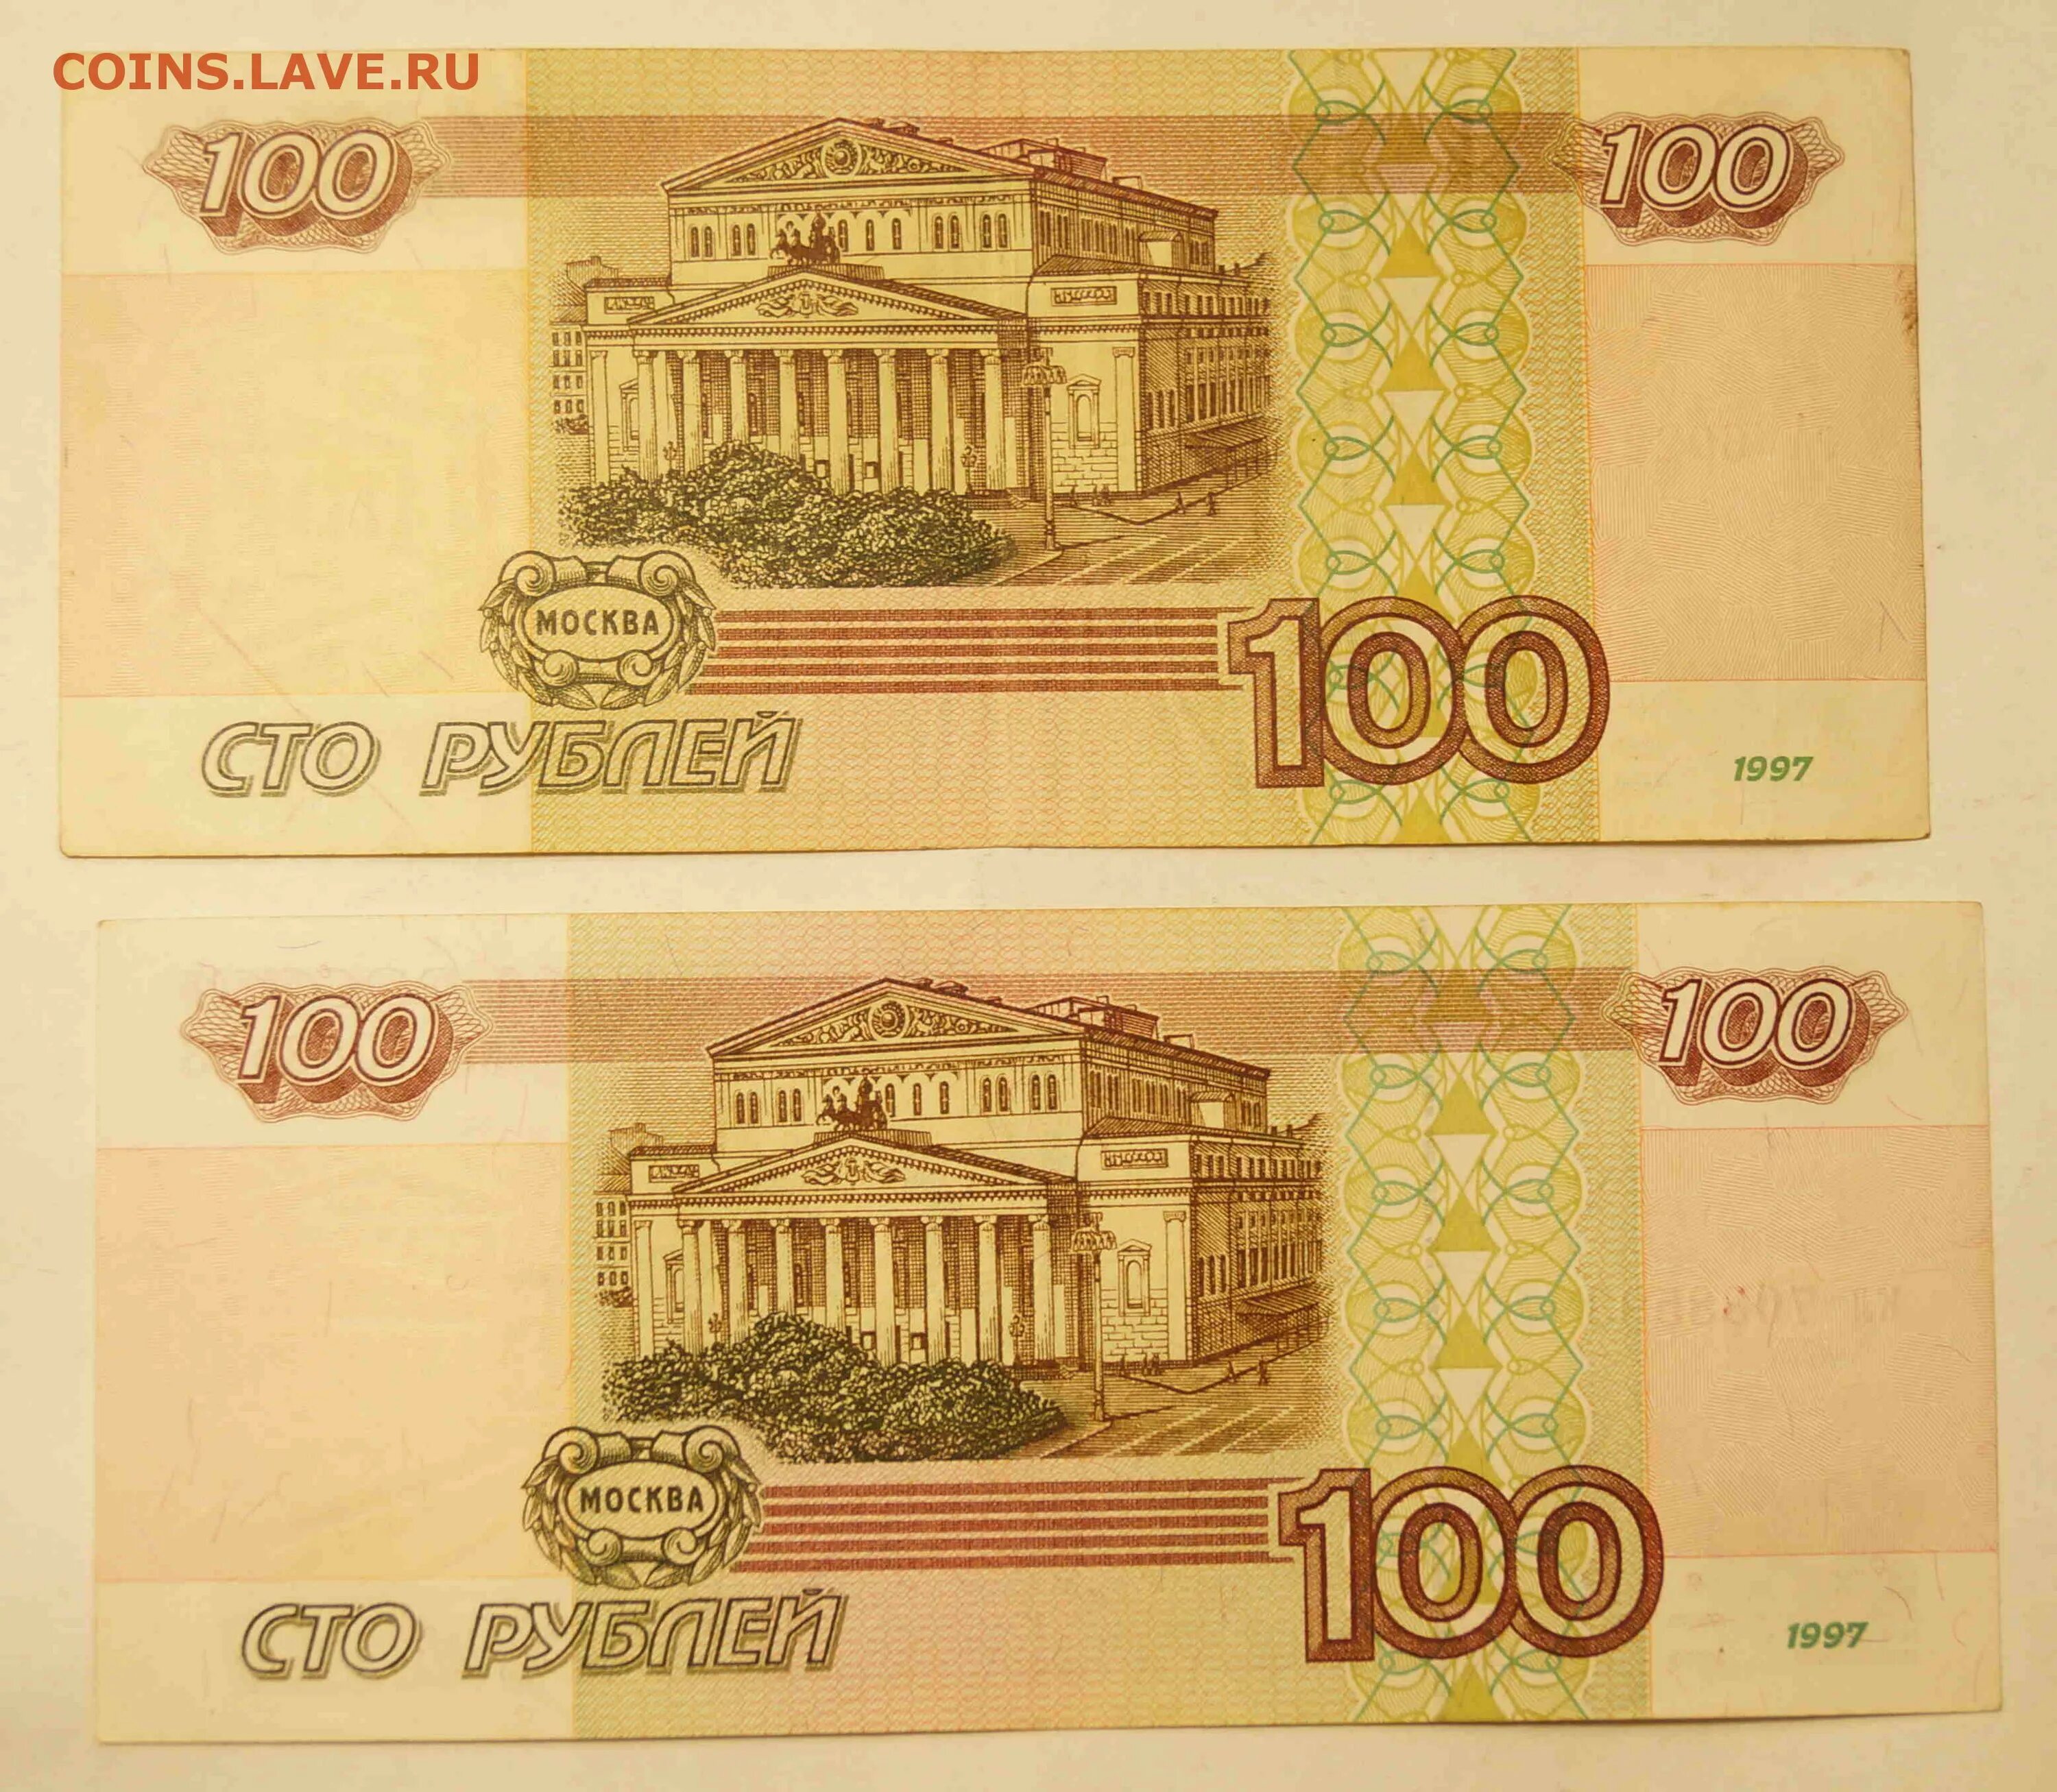 100 000 Рублей 1995 года. СТО тысяч рублей купюра. 100 Тысяч рублей банкнота. Купюра 100000 1995 года.